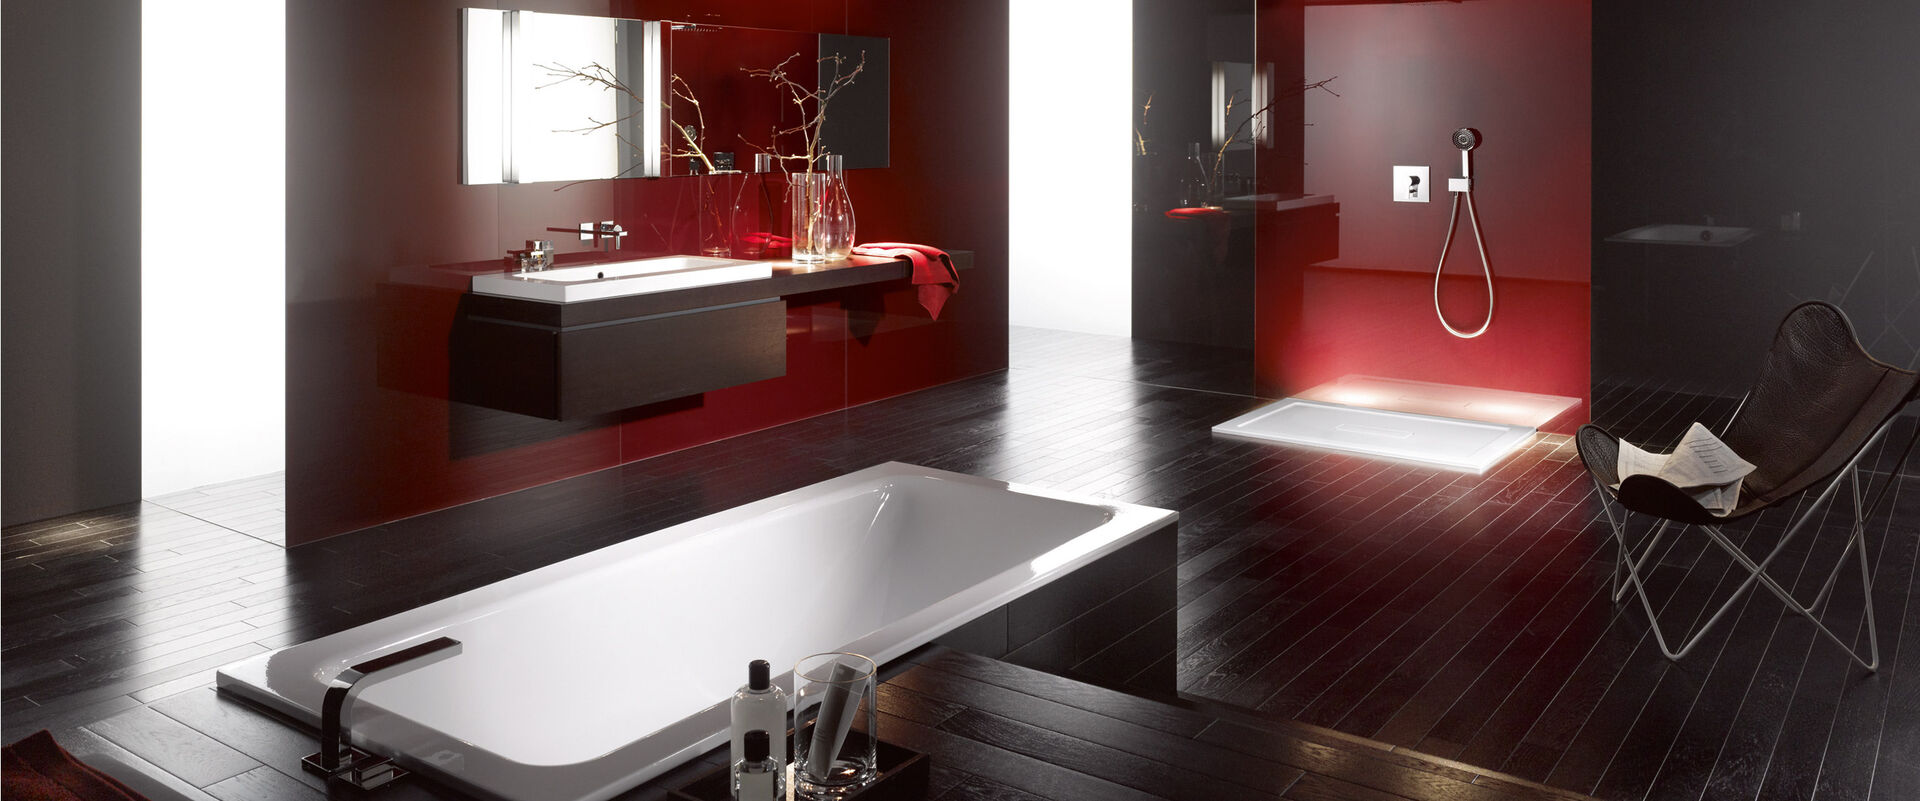 Badezimmermilieu mit Einbaubadewanne, Waschbecken und Dusche. Rote Wand Abendstimmung. Produkte BETTEOne von Bette.